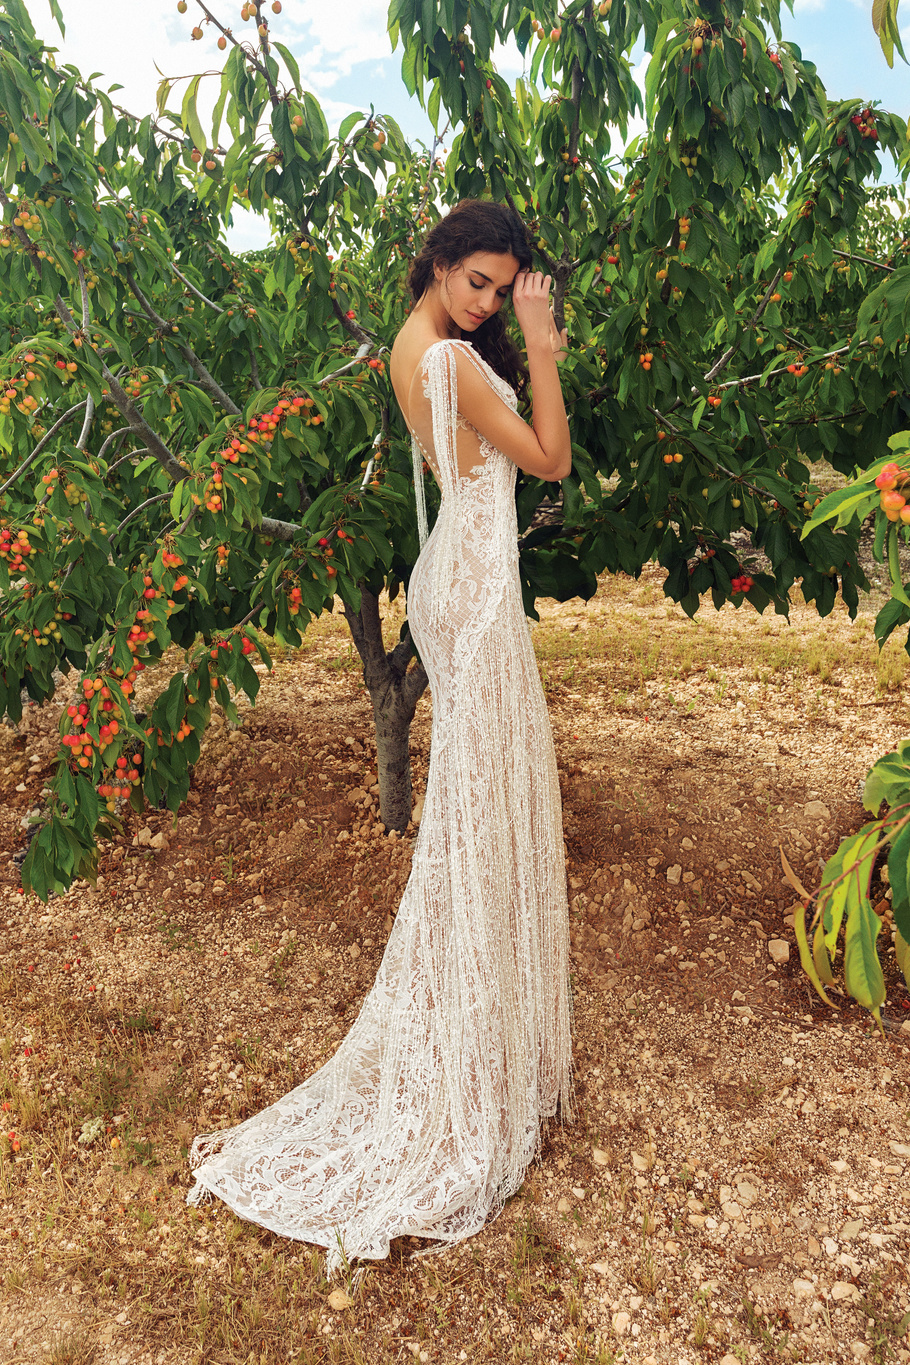 Купить свадебное платье «Лореин» Татьяны Каплун из коллекции «Вайлд Винд 2019» в интернет-магазине